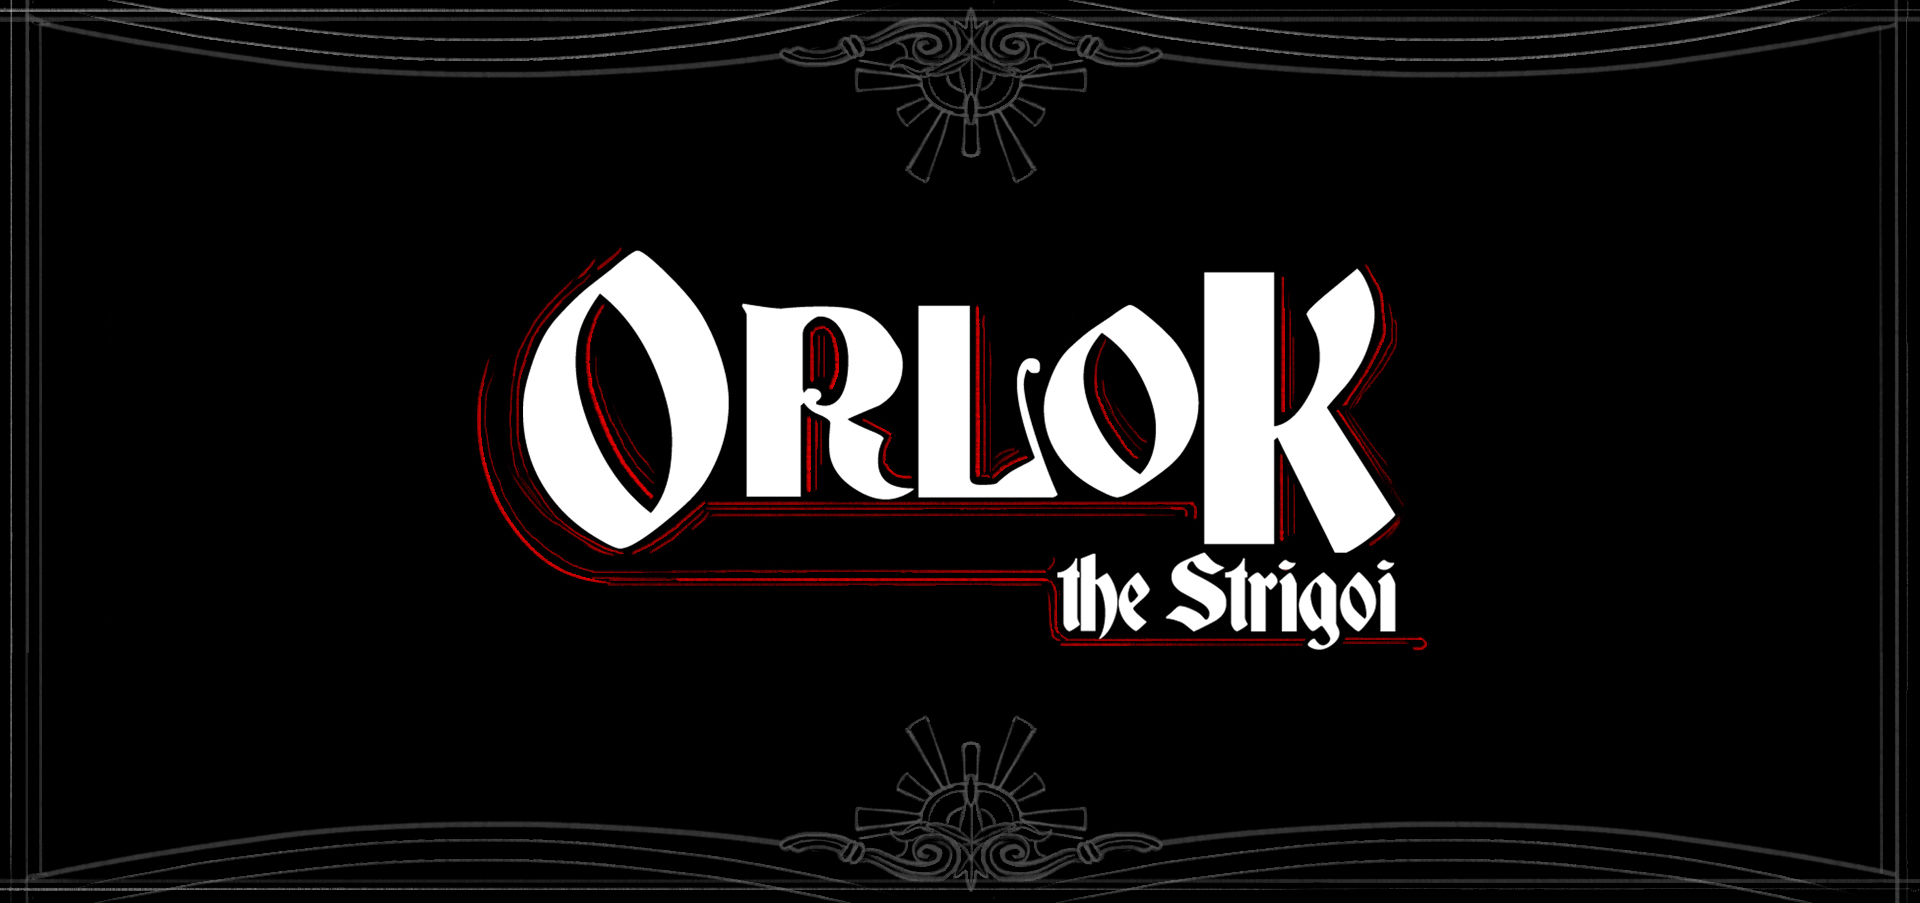 Orlok The Strigoi